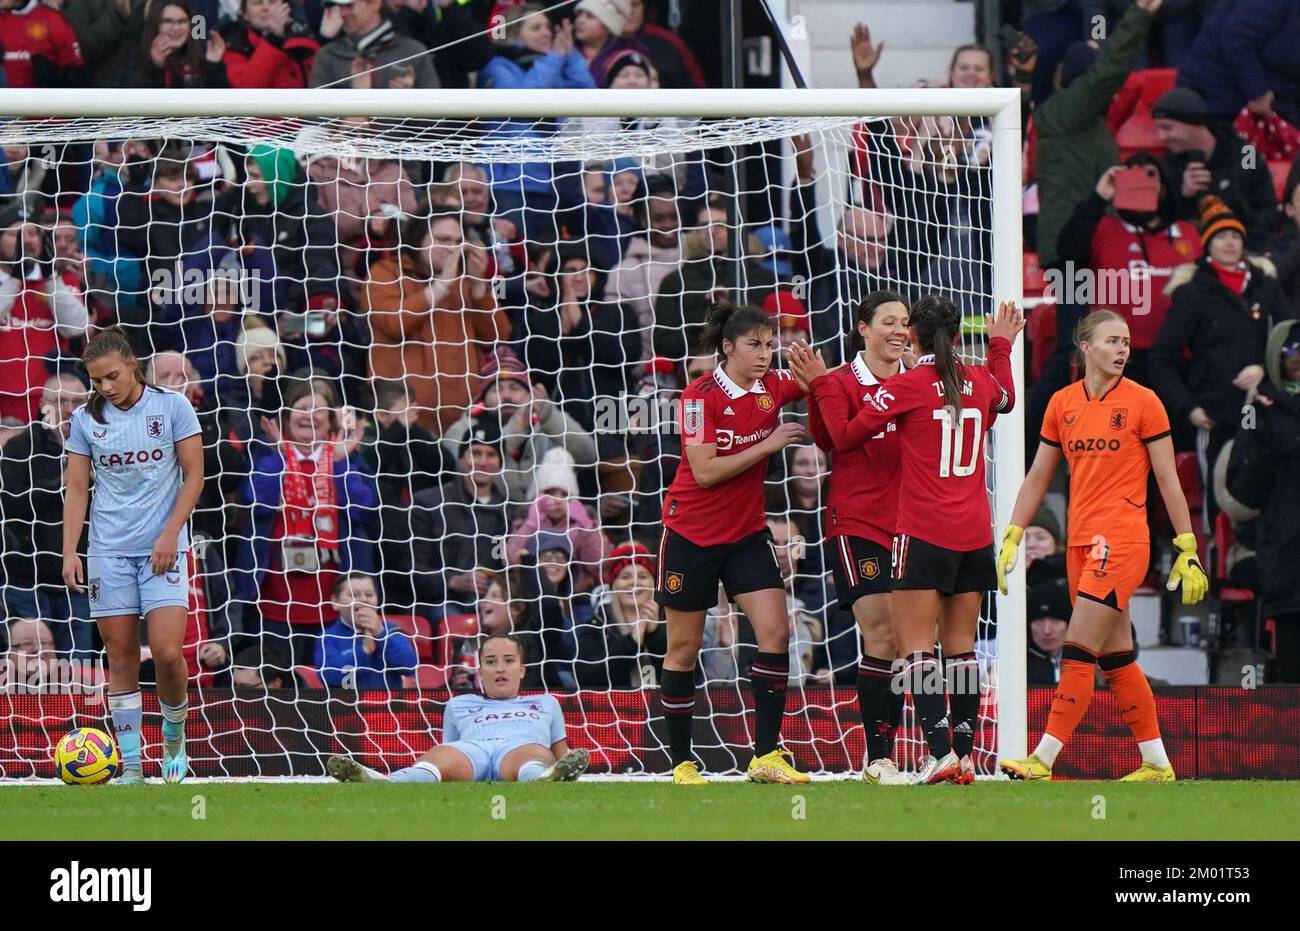 Rachel Williams (tercera derecha) del Manchester United celebra con sus compañeros de equipo después de marcar el quinto gol de su equipo durante el partido de la Superliga Femenina de Barclays en Old Trafford, Manchester. Fecha de la foto: Sábado 3 de diciembre de 2022. Foto de stock